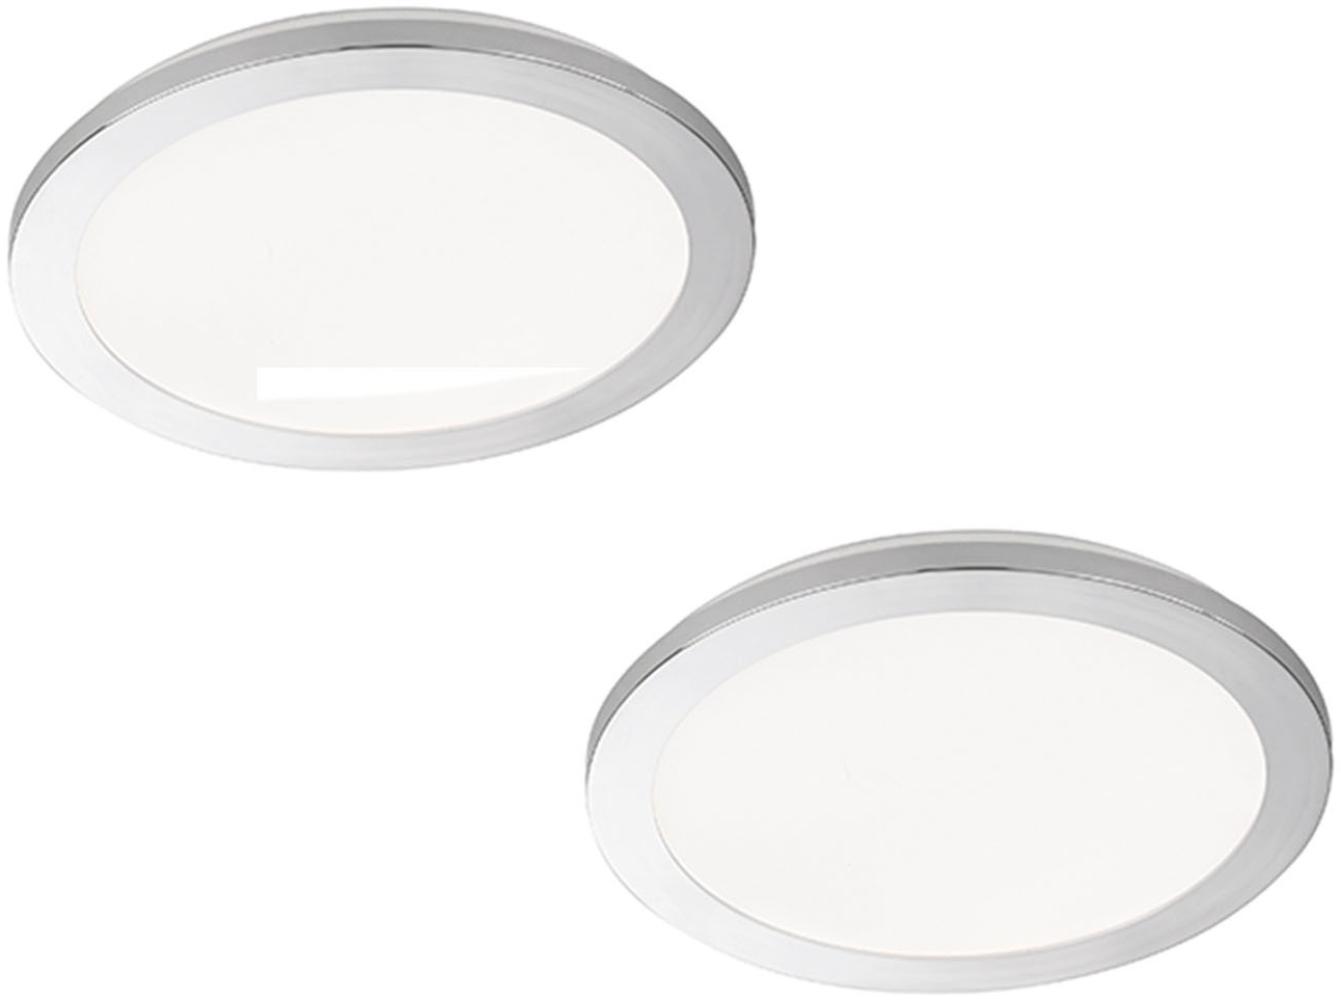 Dimmbares LED Deckenleuchtenset: 2 IP44 Deckenschalen Ø 30cm, Chrom / Acryl weiß Bild 1